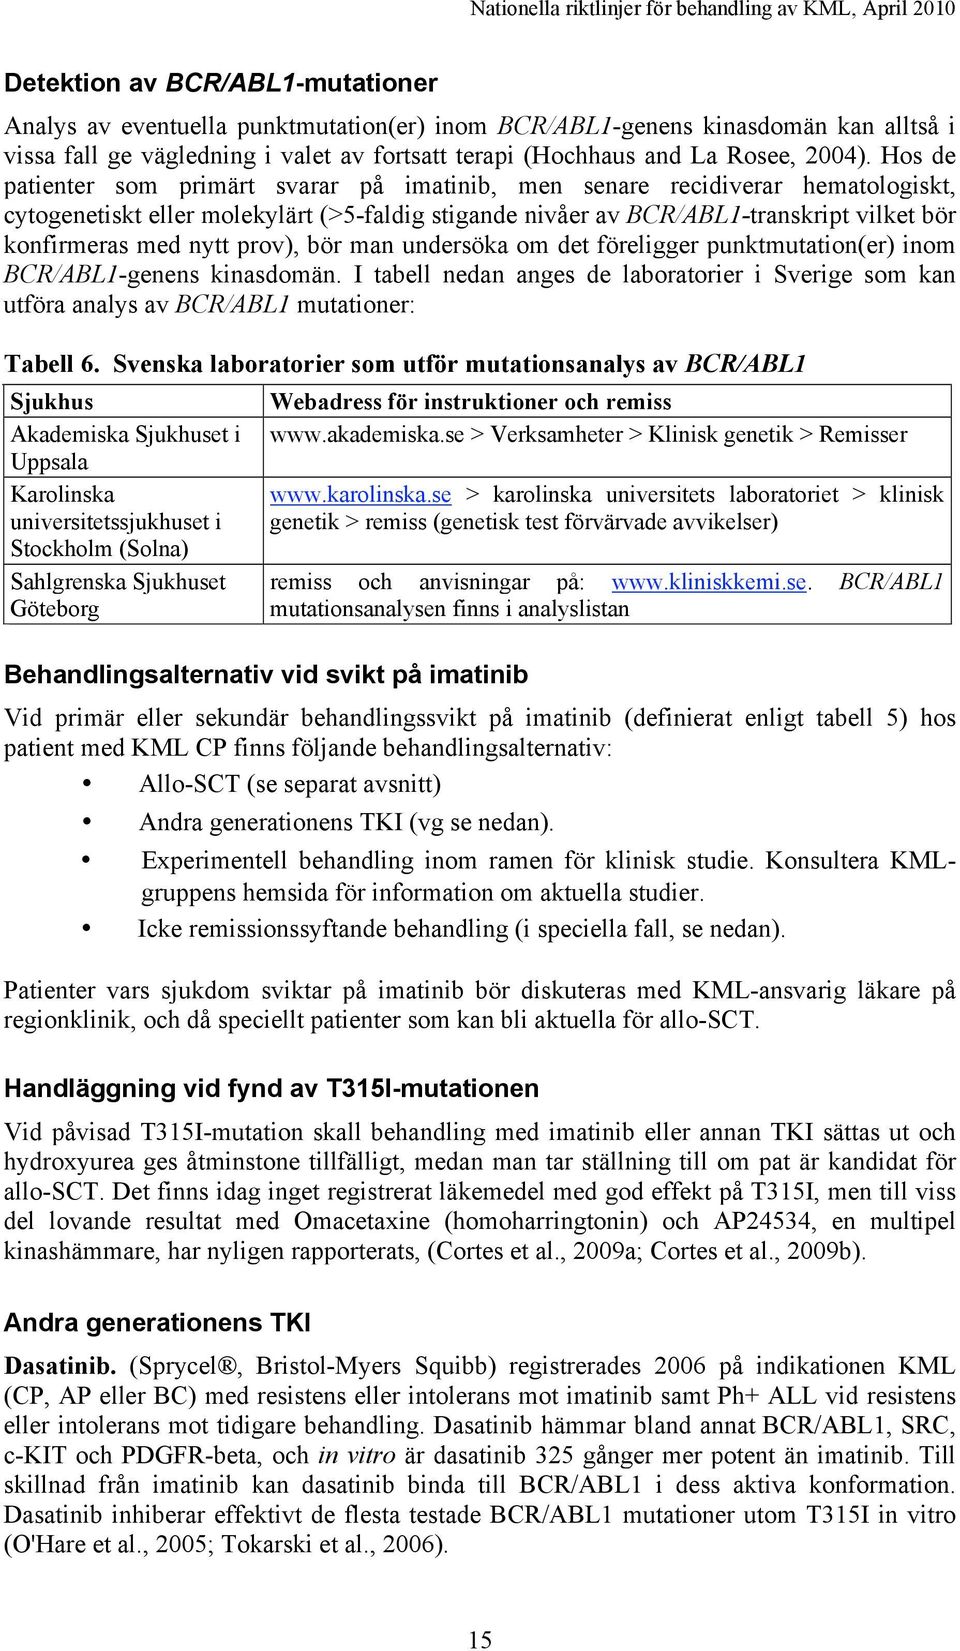 prov), bör man undersöka om det föreligger punktmutation(er) inom BCR/ABL1-genens kinasdomän. I tabell nedan anges de laboratorier i Sverige som kan utföra analys av BCR/ABL1 mutationer: Tabell 6.